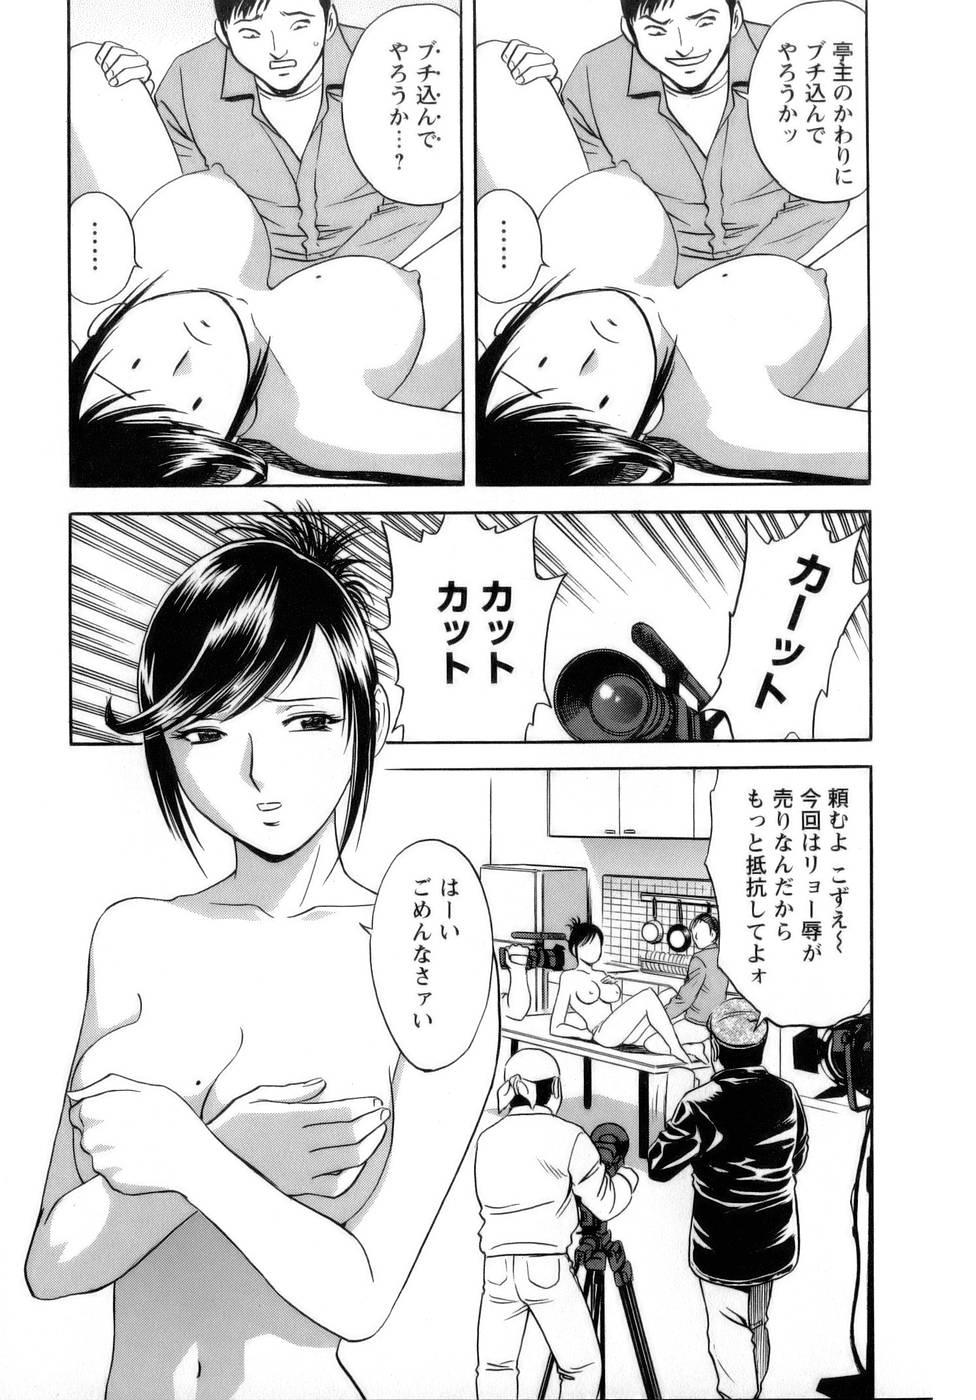 [Hidemaru] Mo-Retsu! Boin Sensei (Boing Boing Teacher) Vol.1 94